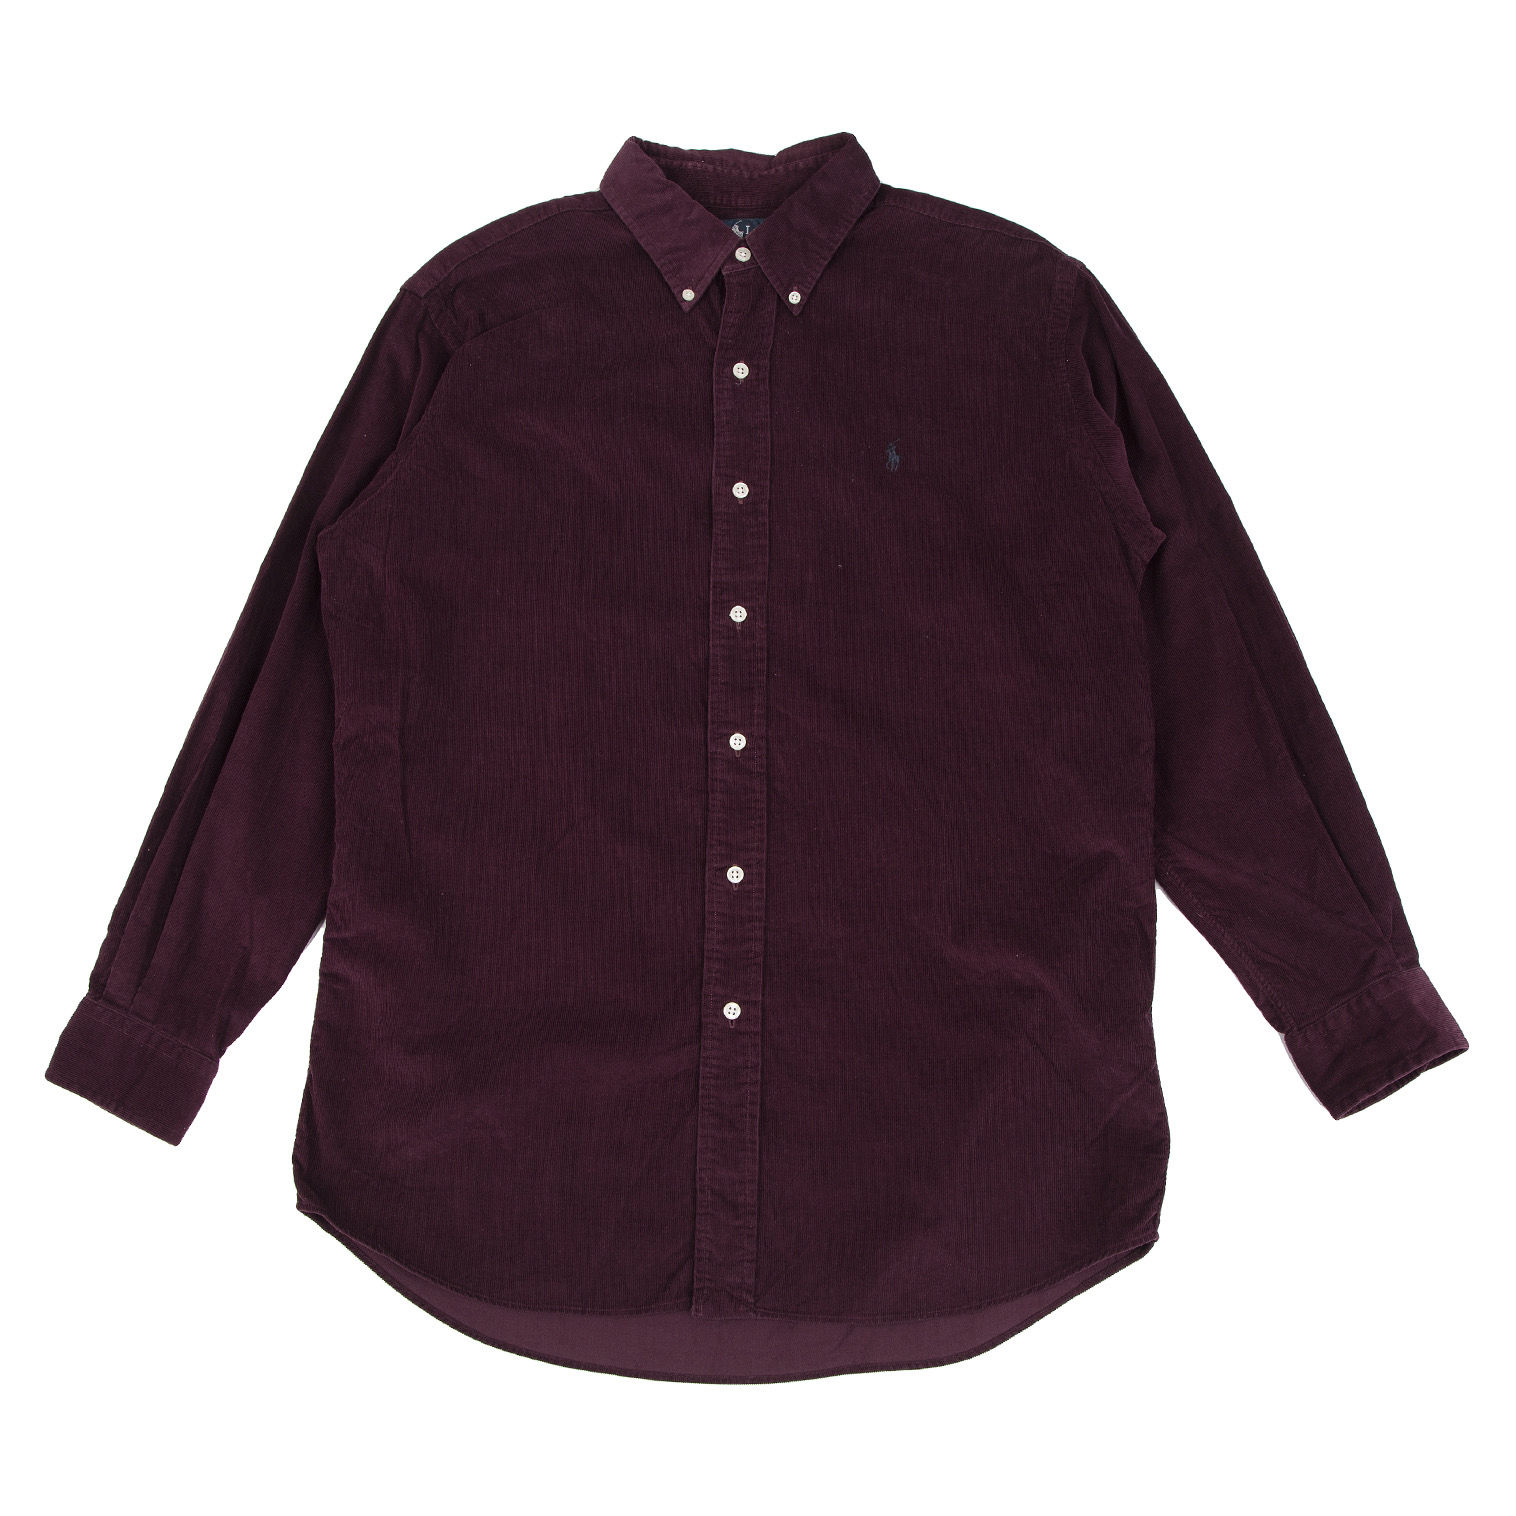 90s ラルフローレン BDシャツ ワンポイント 刺繍ロゴ ビッグシャツ ワインコットン100%状態